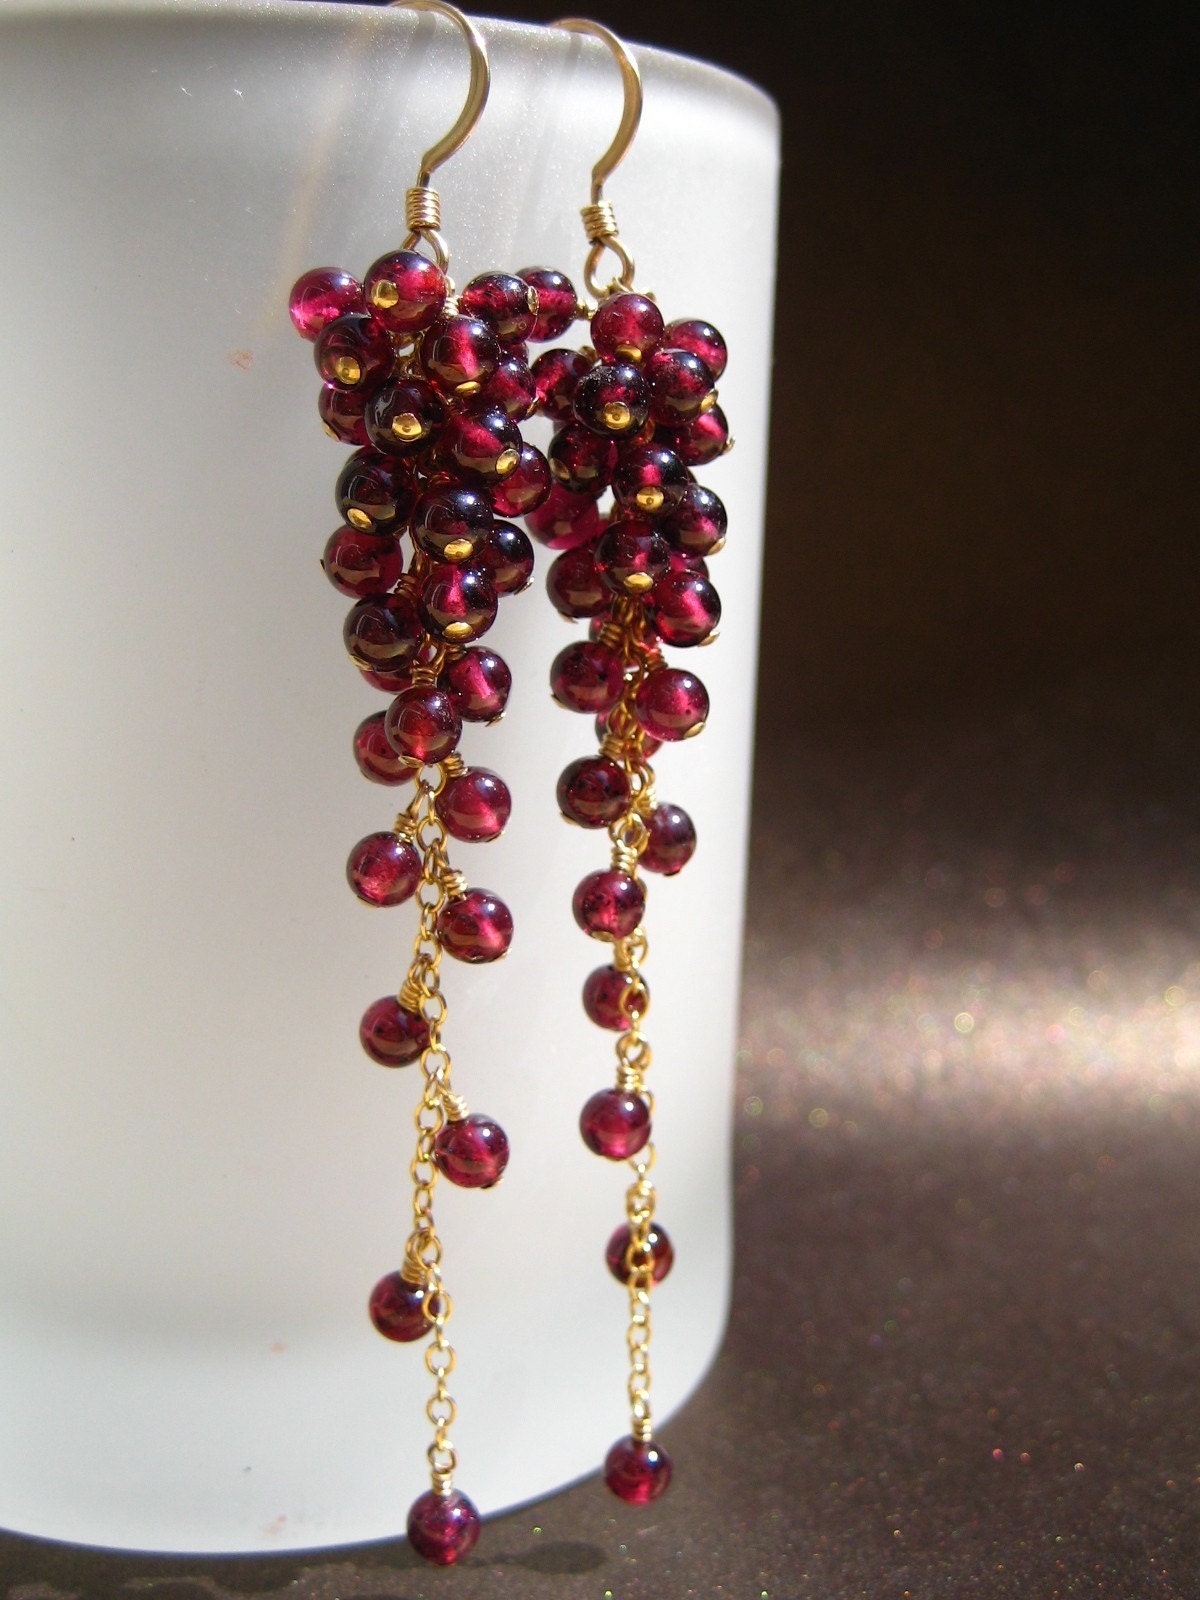 Bordeaux - Garnet earrings